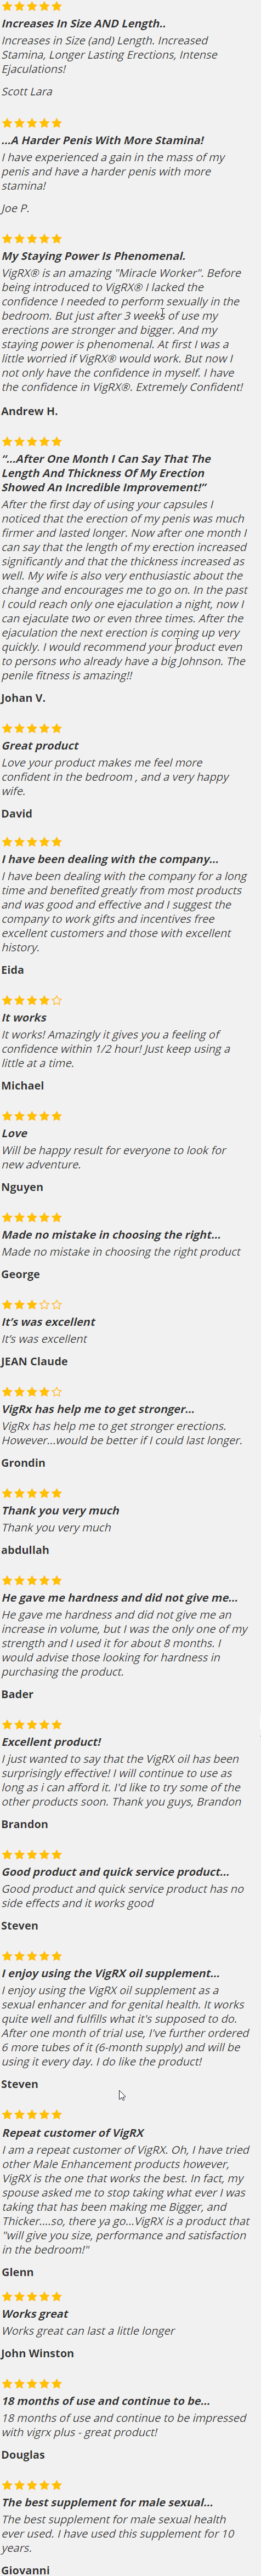 VigRX Reviews